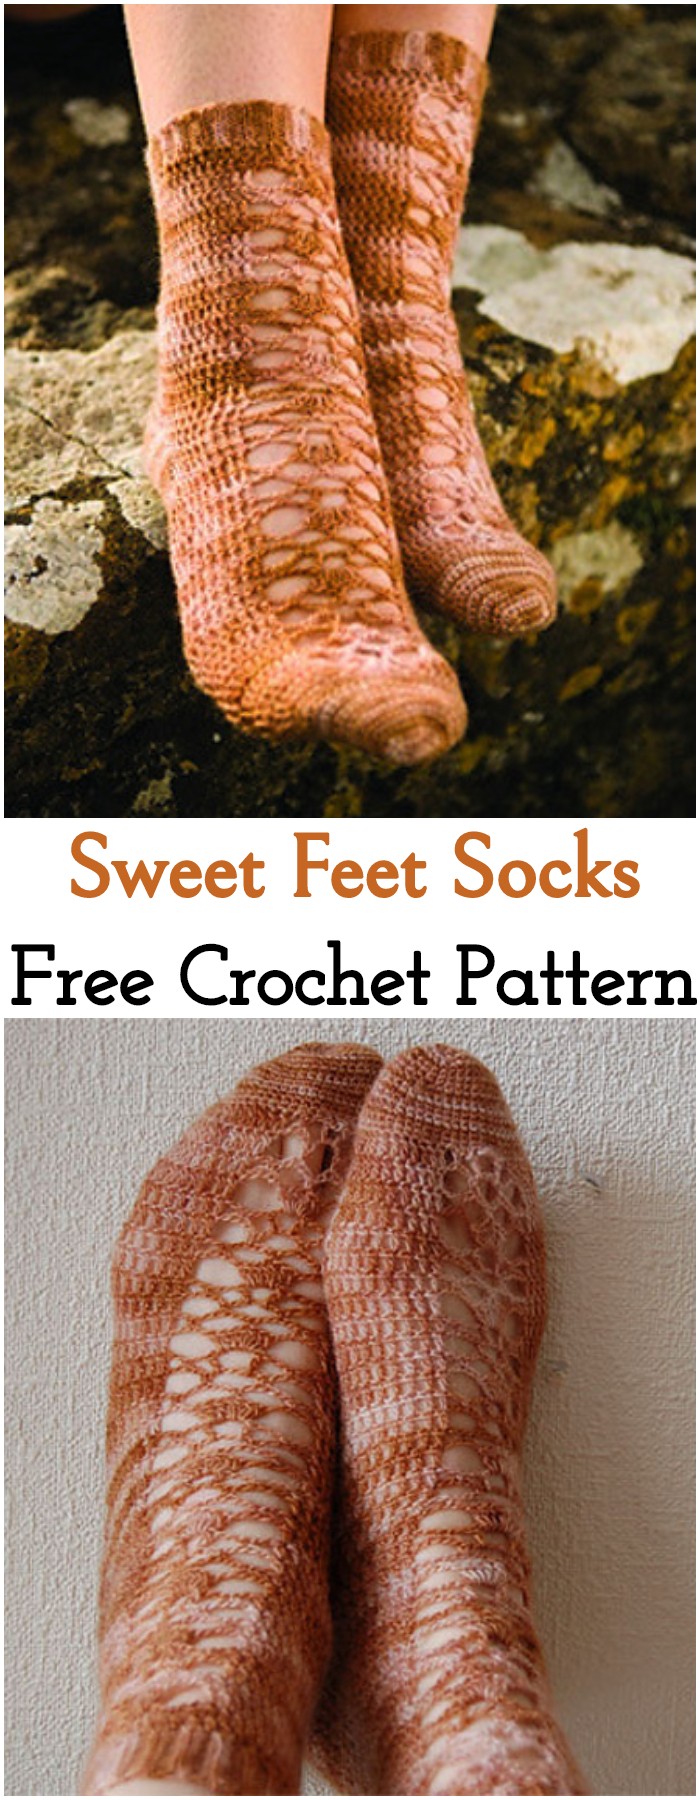 Crochet Sweet Feet Socks